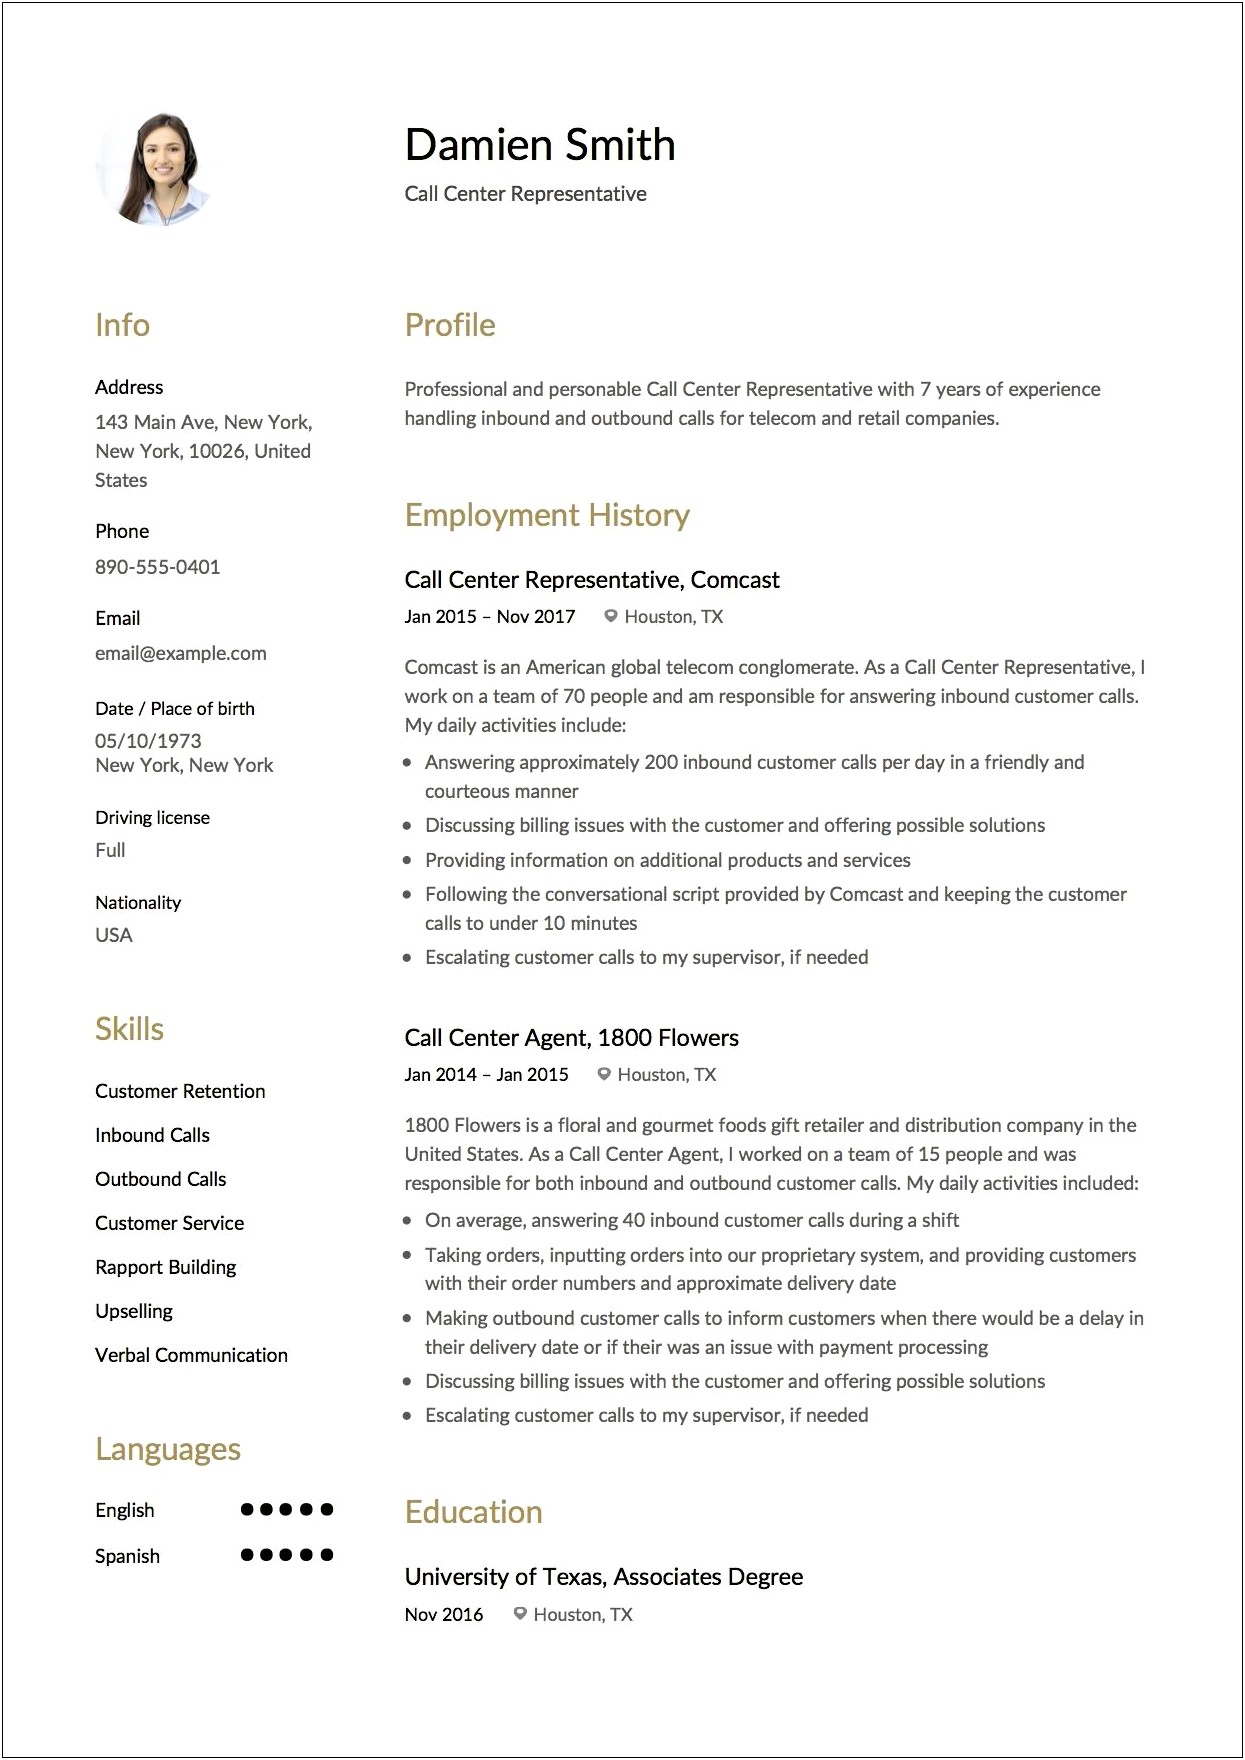 Resume Description For A Call Center Agent